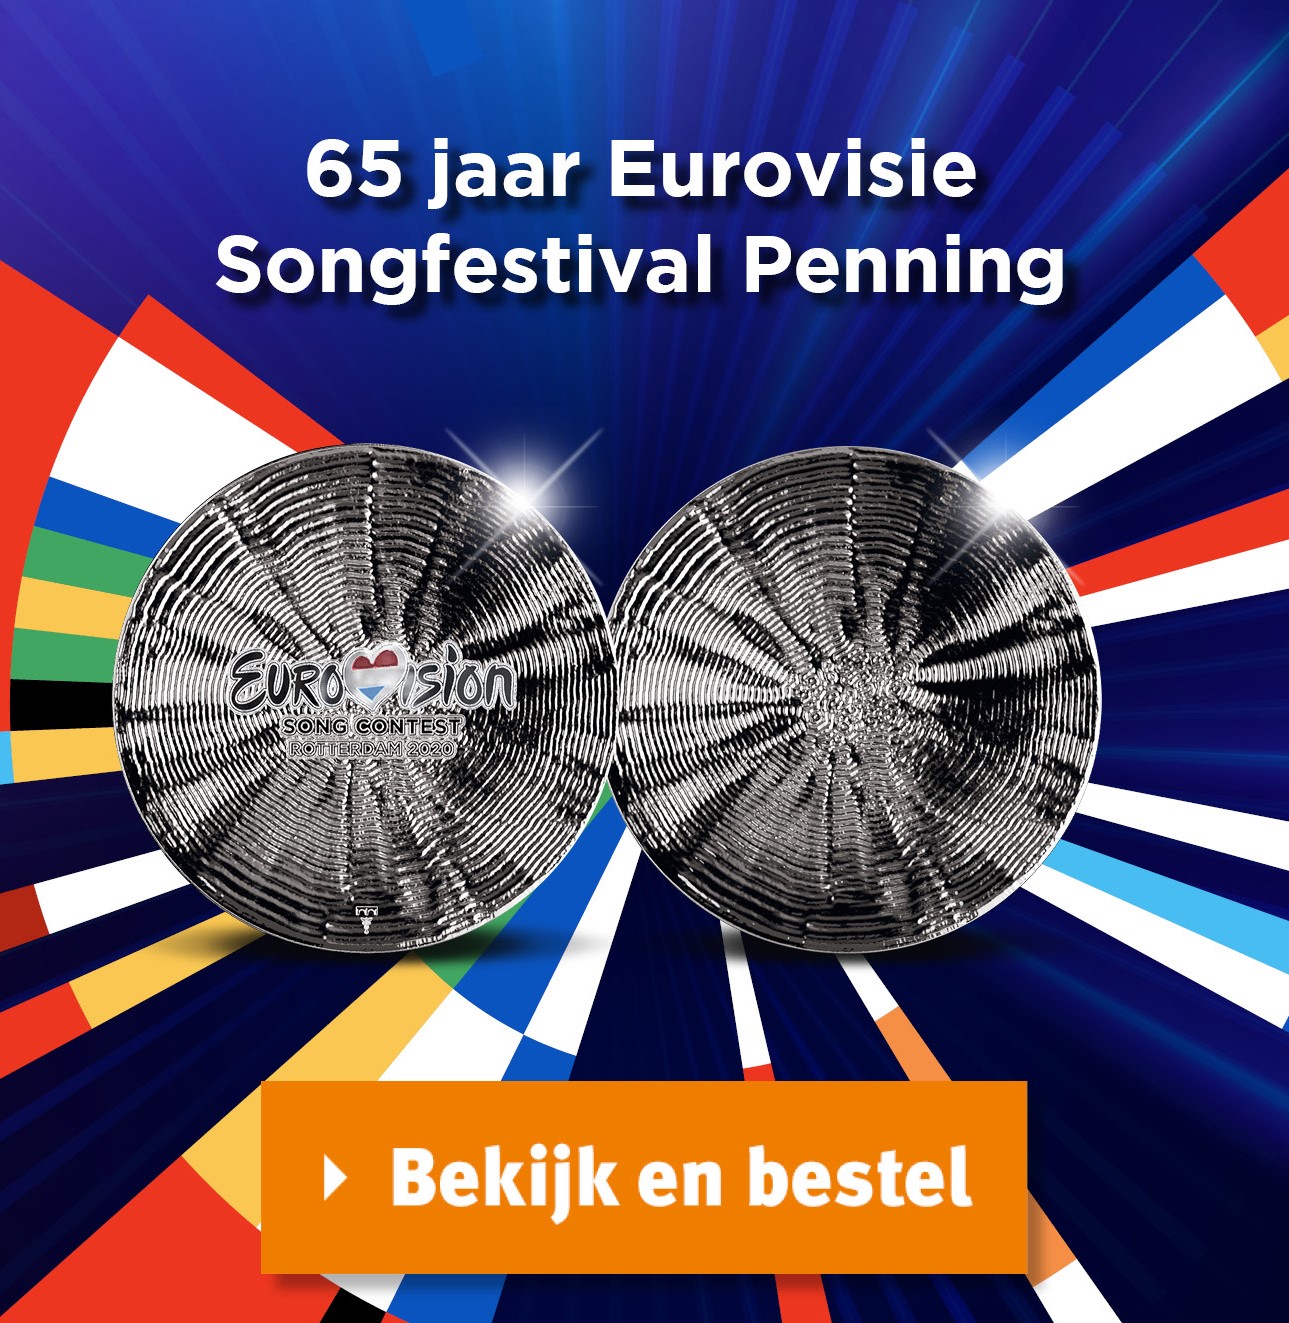 Bekijk en bestel: 65 jaar Eurovisie Songfestival Penning 